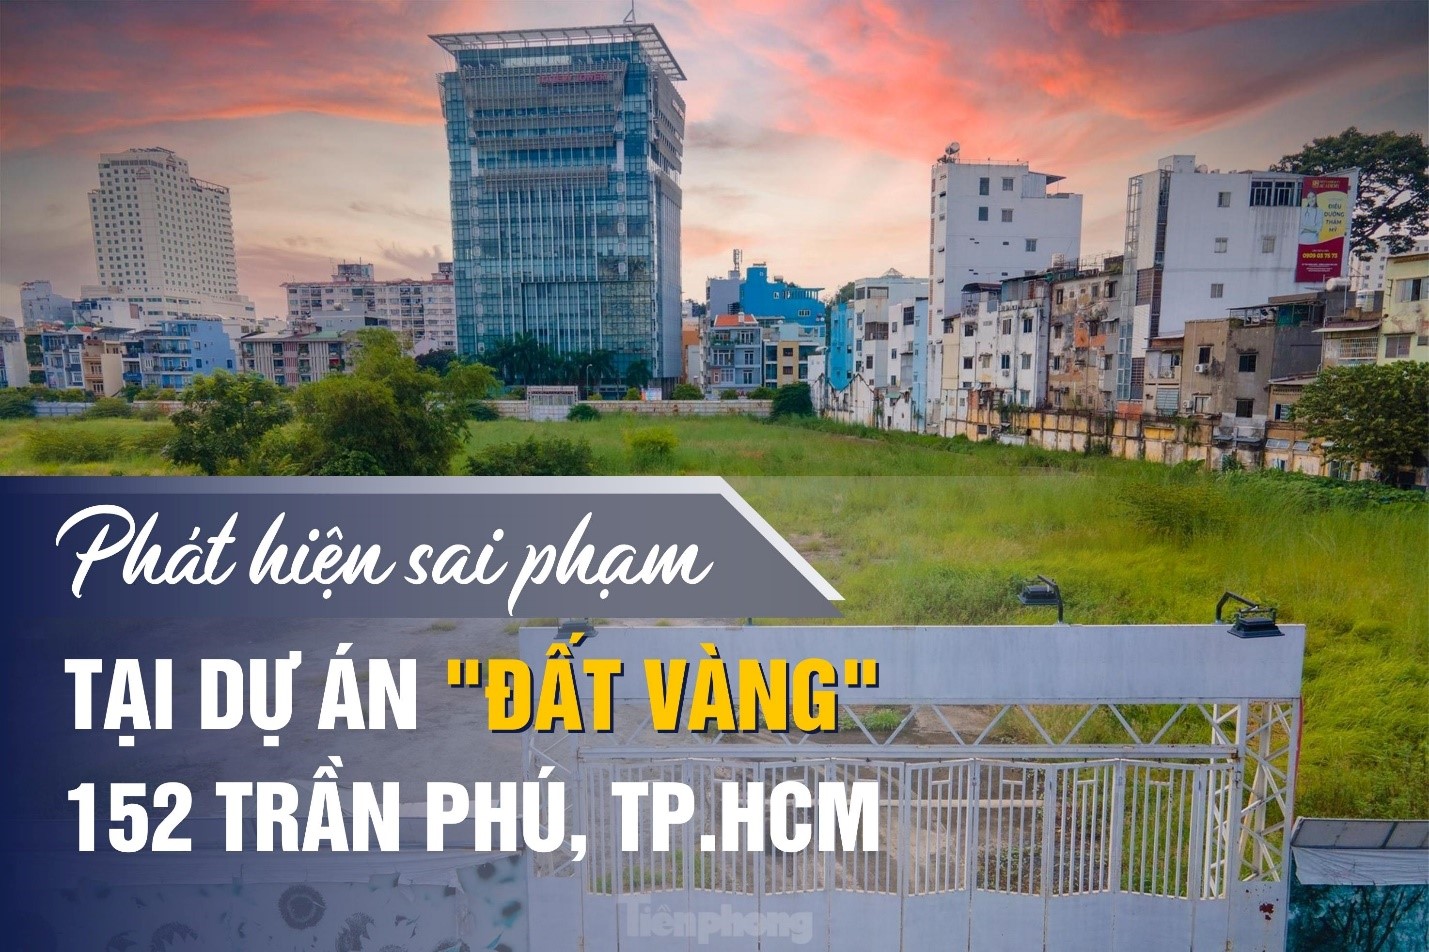 Phát hiện sai phạm tại dự án đất vàng 152 Trần Phú, TP.HCM